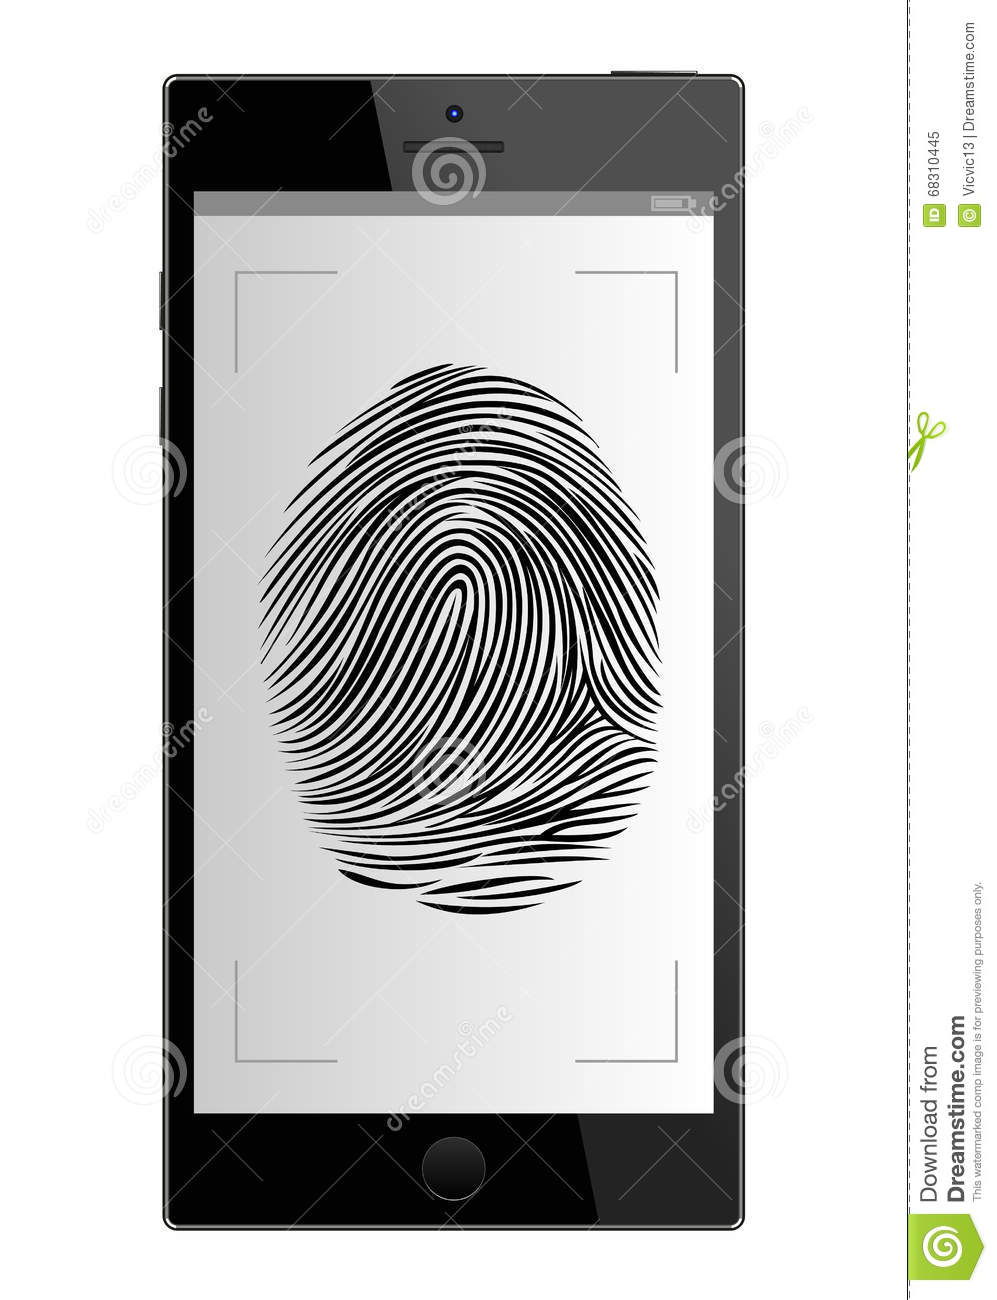 Free fingerprint scanner software